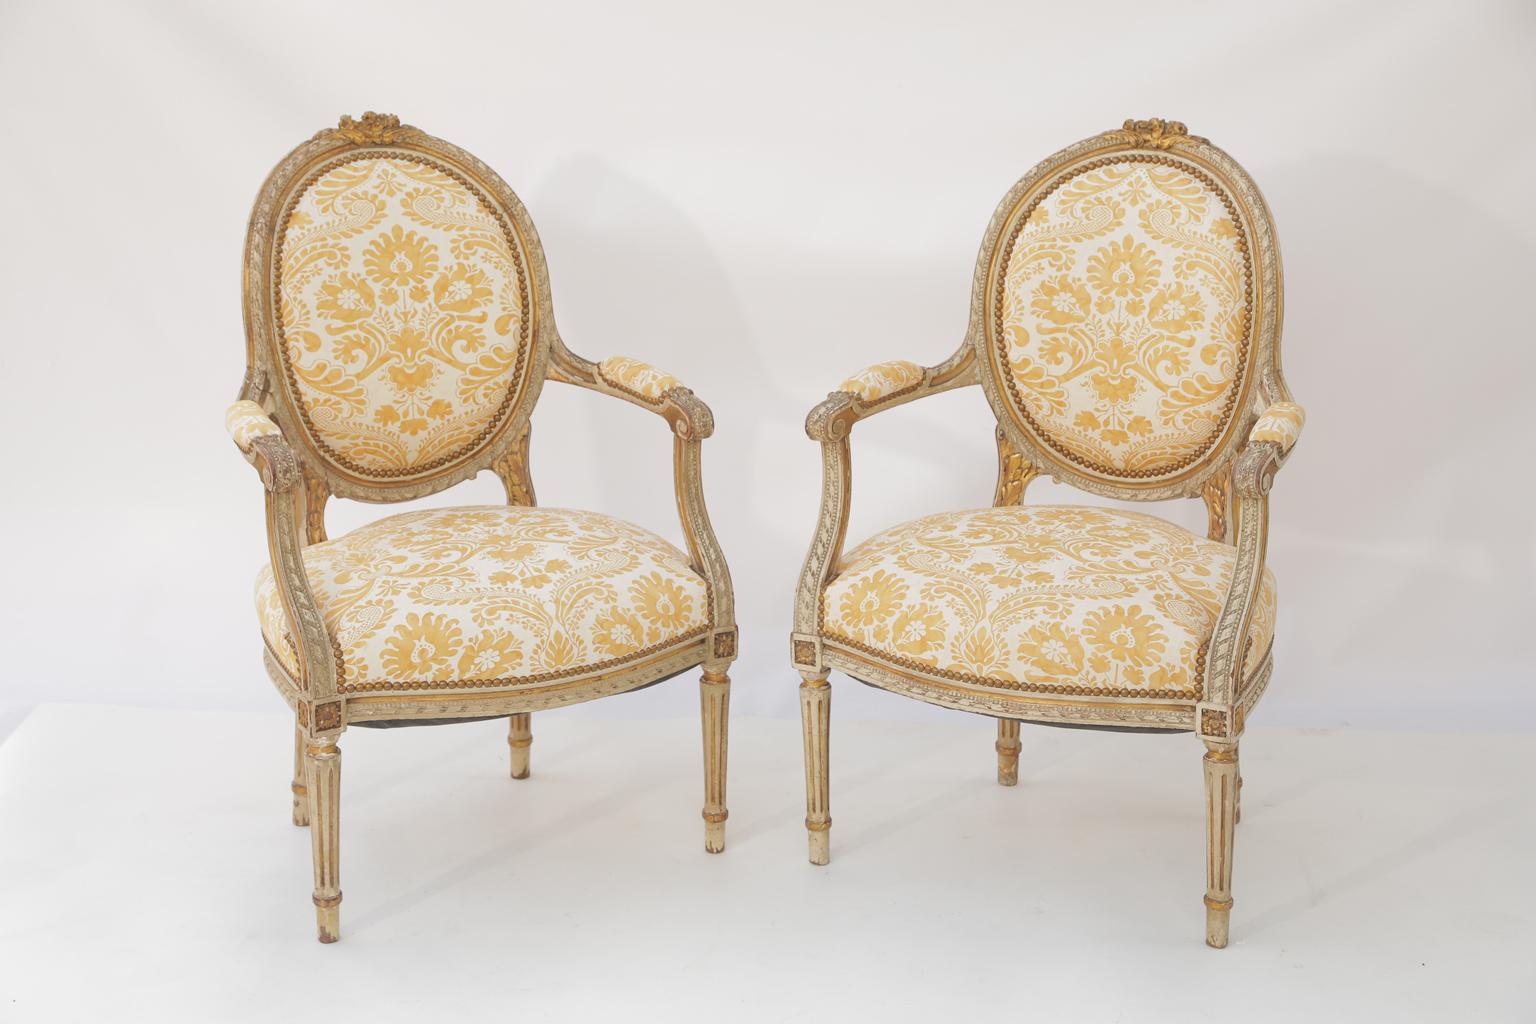 Paire de fauteuils de style Louis XVI, de finition peinte et dorée à la feuille présentant une usure naturelle, chaque dossier ovale rembourré dans un cadre godronné, surmonté d'une sculpture feuillagée, les bras évasés, avec accoudoirs, se